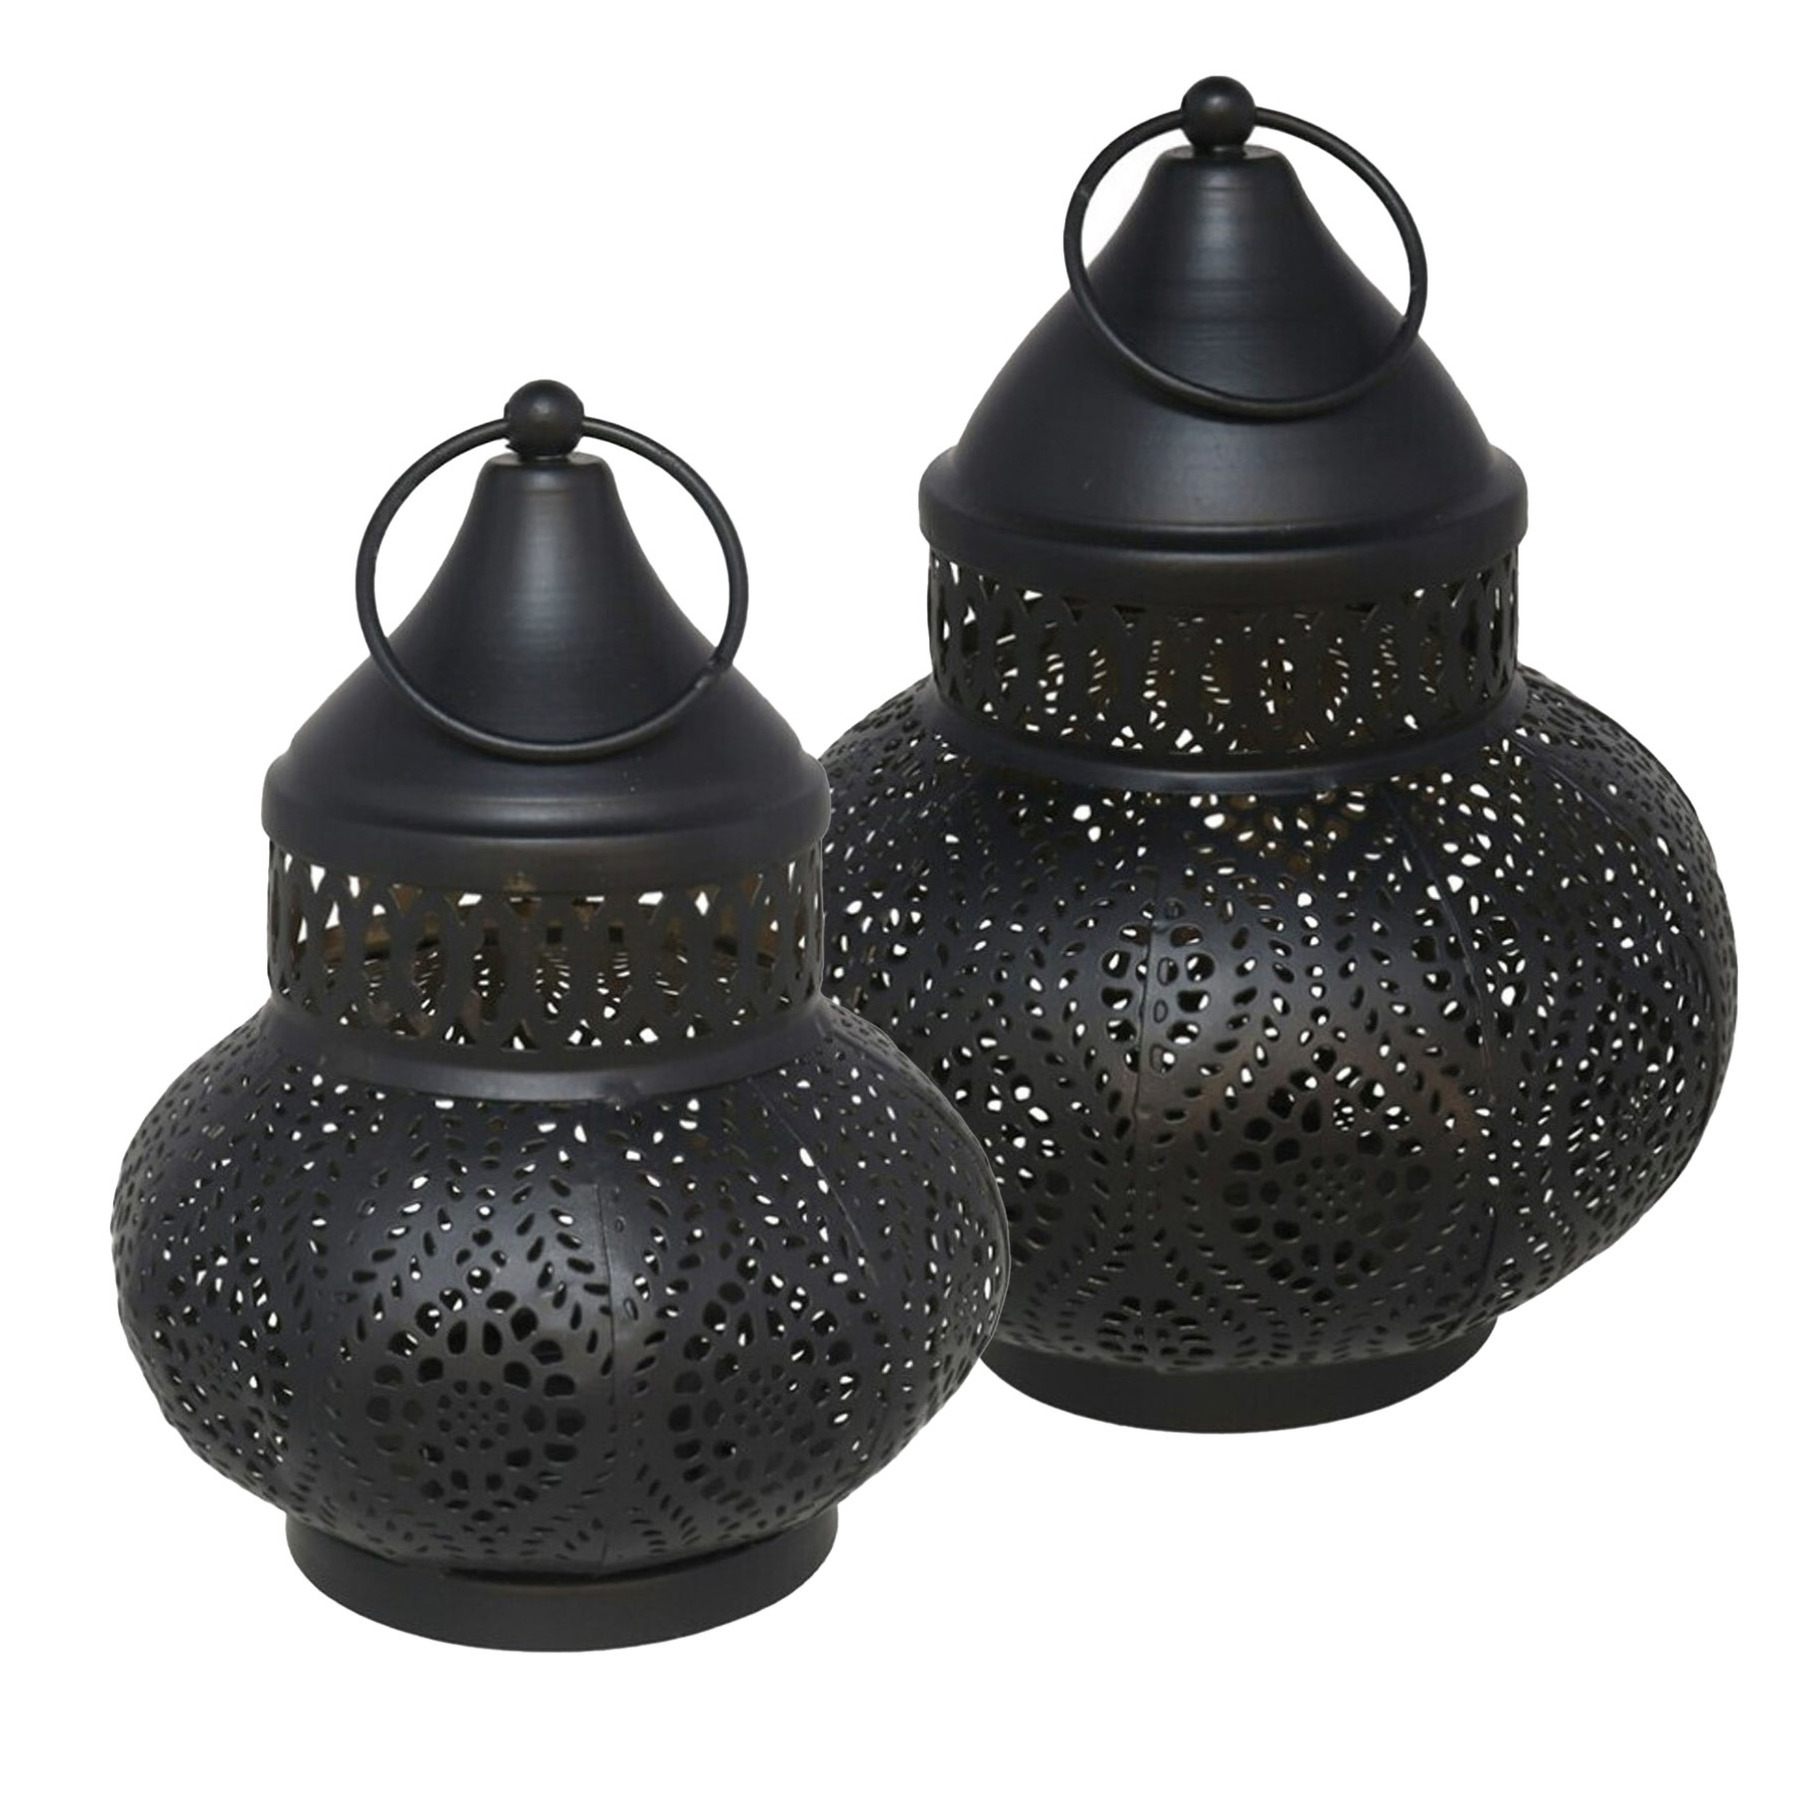 Tuin deco lantaarns set van 2 - Marokkaanse sfeer - zwart/goud - metaal - buitenverlichting